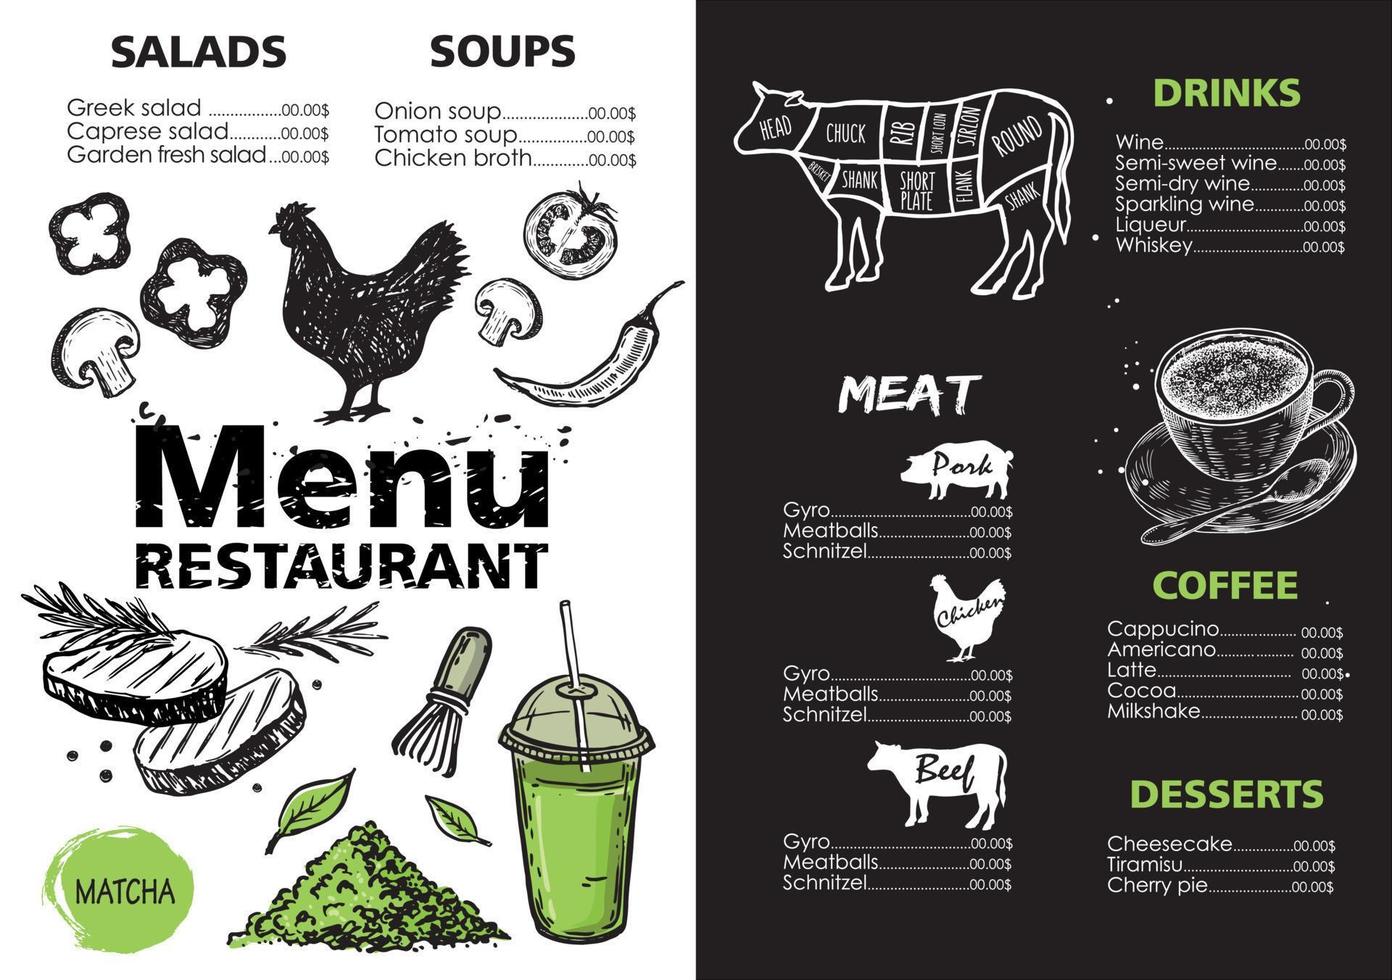 conception de modèle de menu pour restaurant, illustration dessinée à la main. vecteur. vecteur